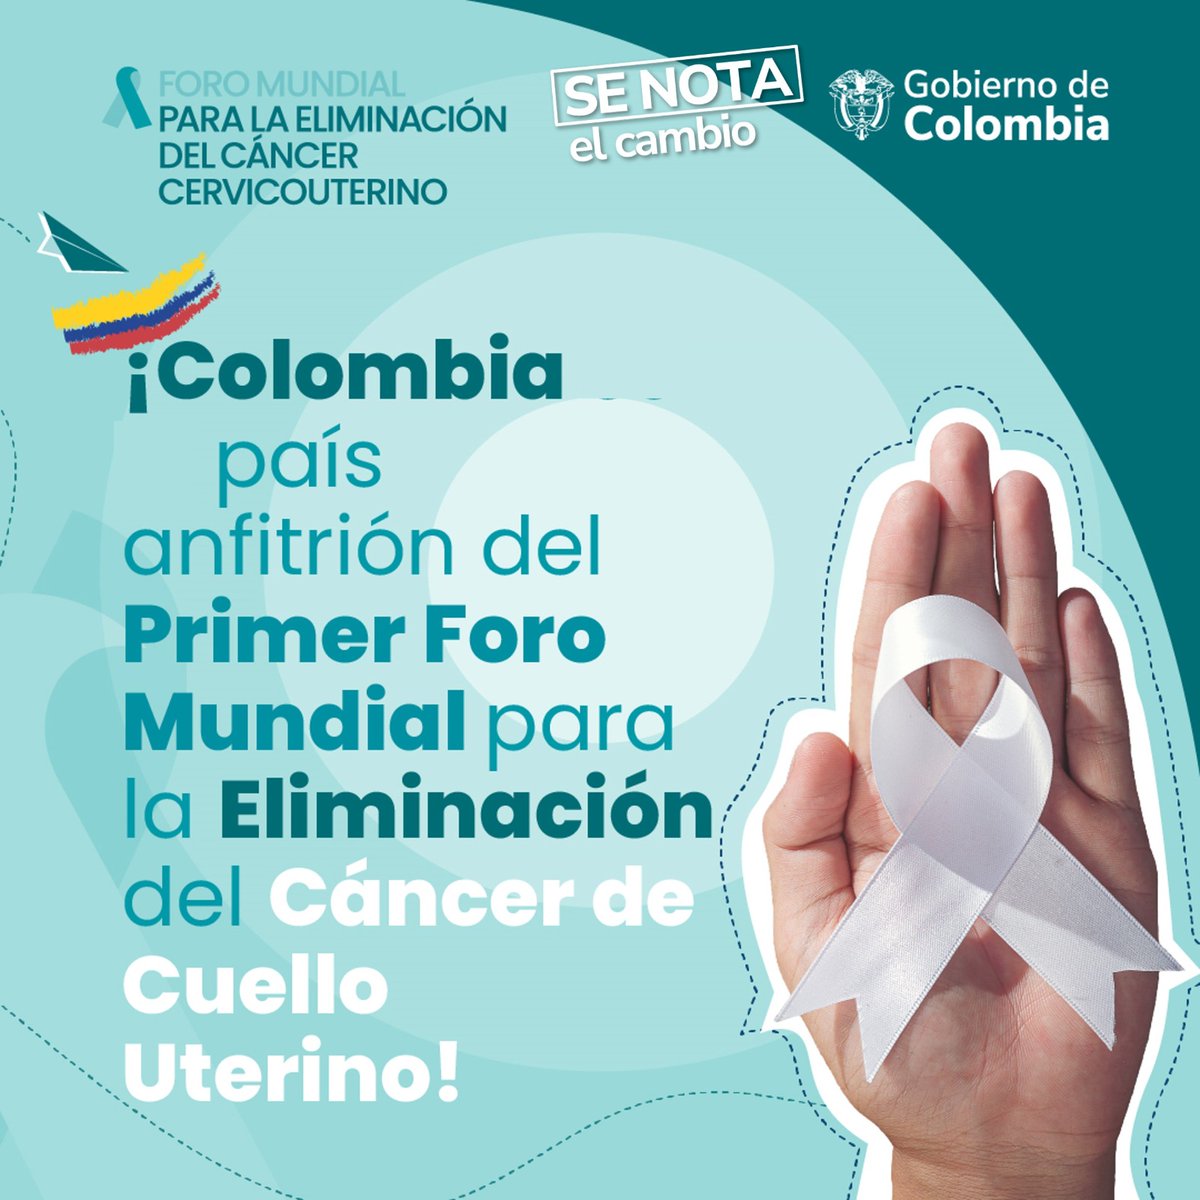 #SeNotaElCambio porque Colombia fue sede del Primer Foro Mundial para la Eliminación del Cáncer de Cuello Uterino; y será anfitriona de la Primera Conferencia Mundial para la Eliminación de la Violencia contra la niñez.